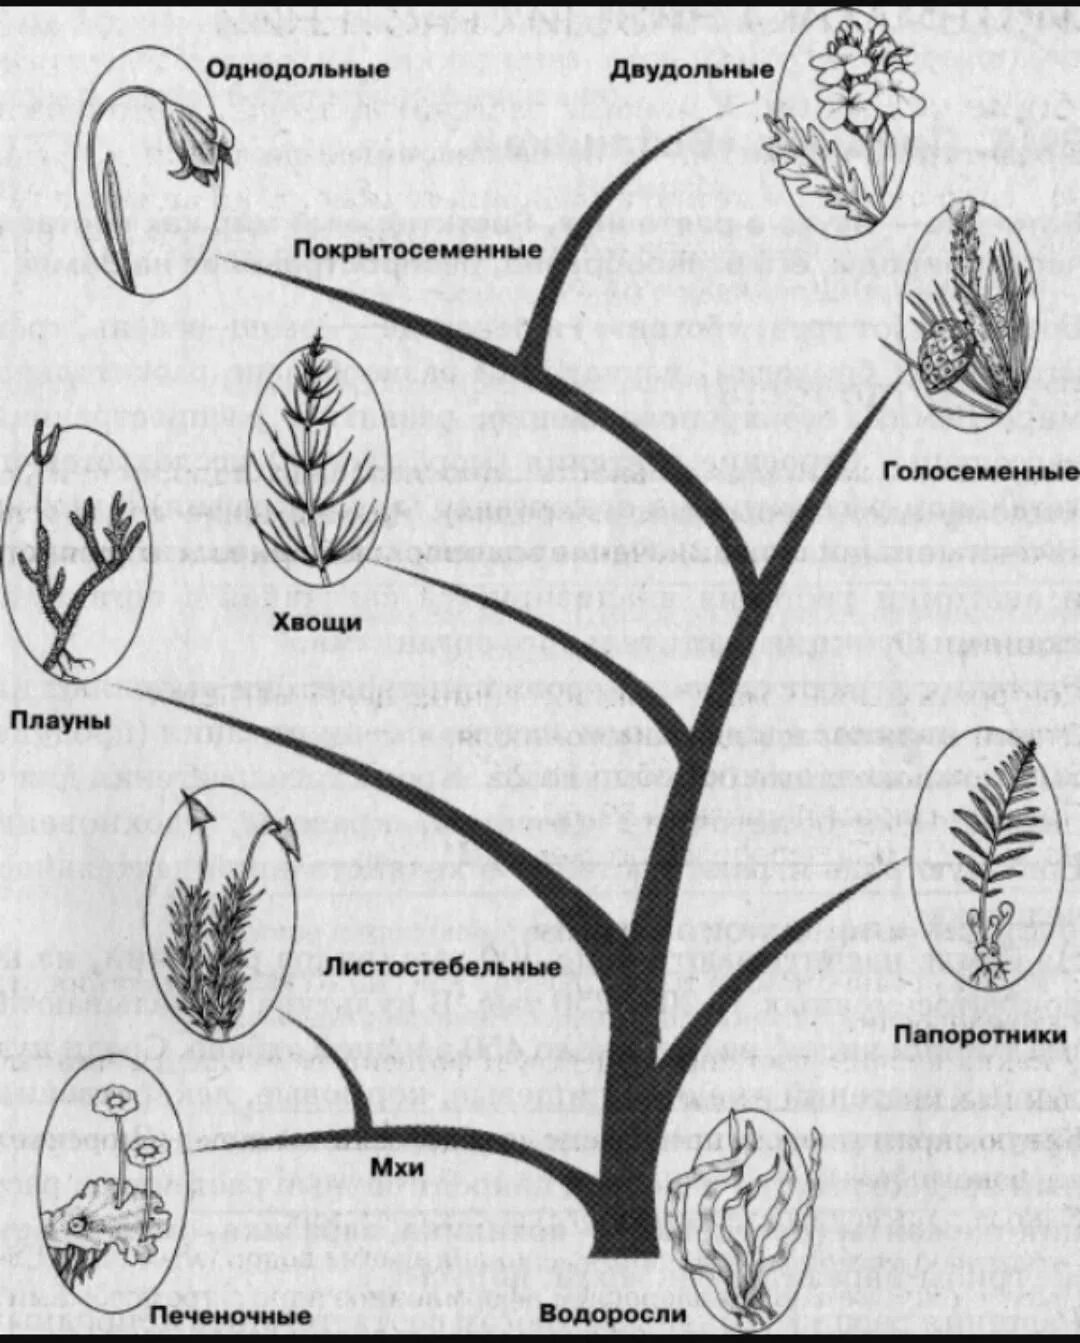 Усложнение организации покрытосеменных. Эволюционное Древо растений схема. Схема происхождения высших растений 5. Родословное Древо царства растений.